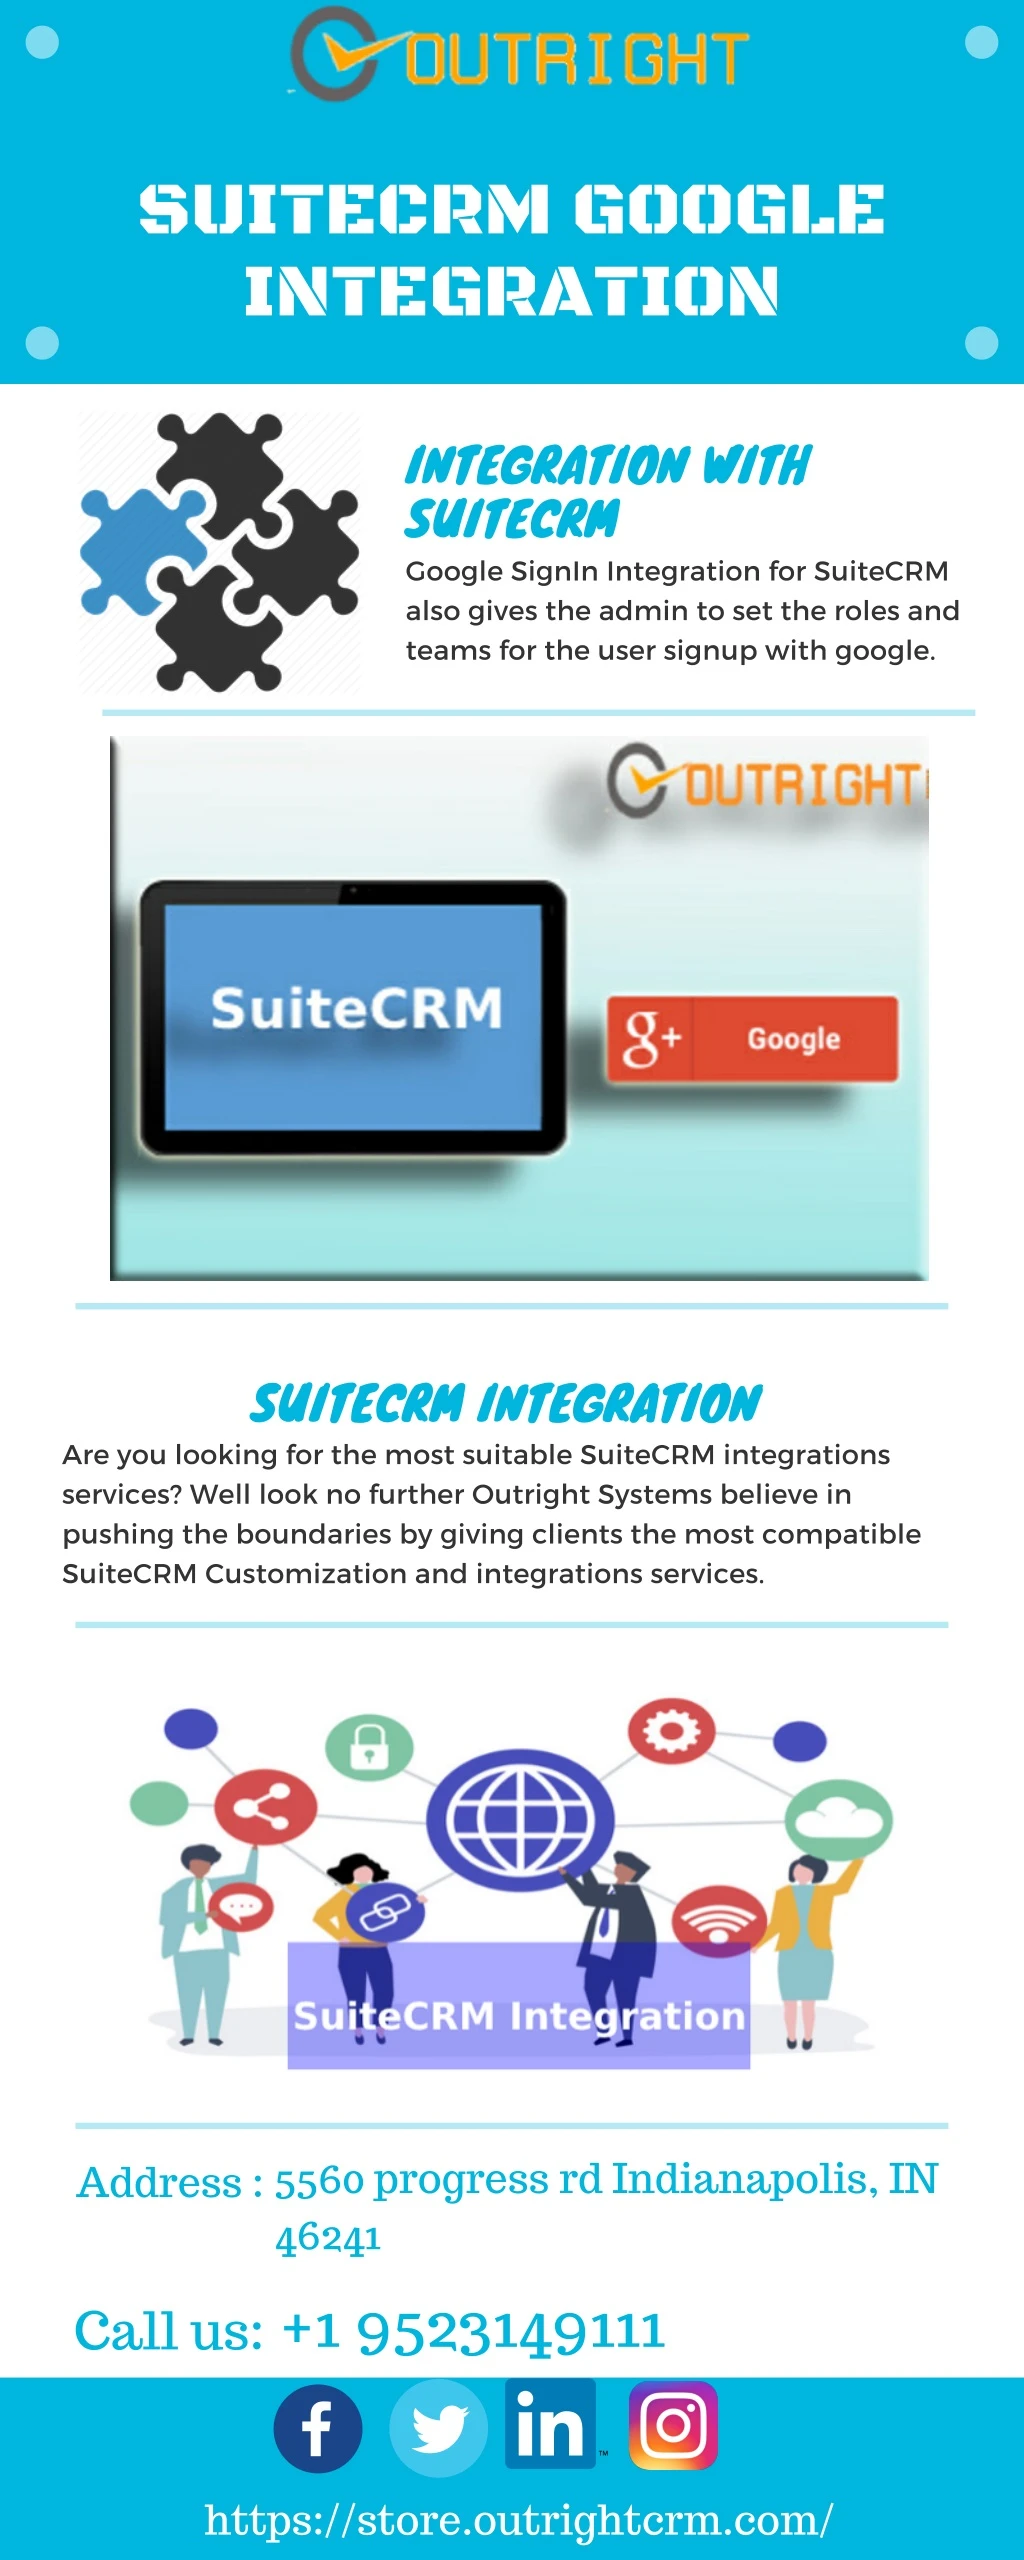 suitecrm google integration